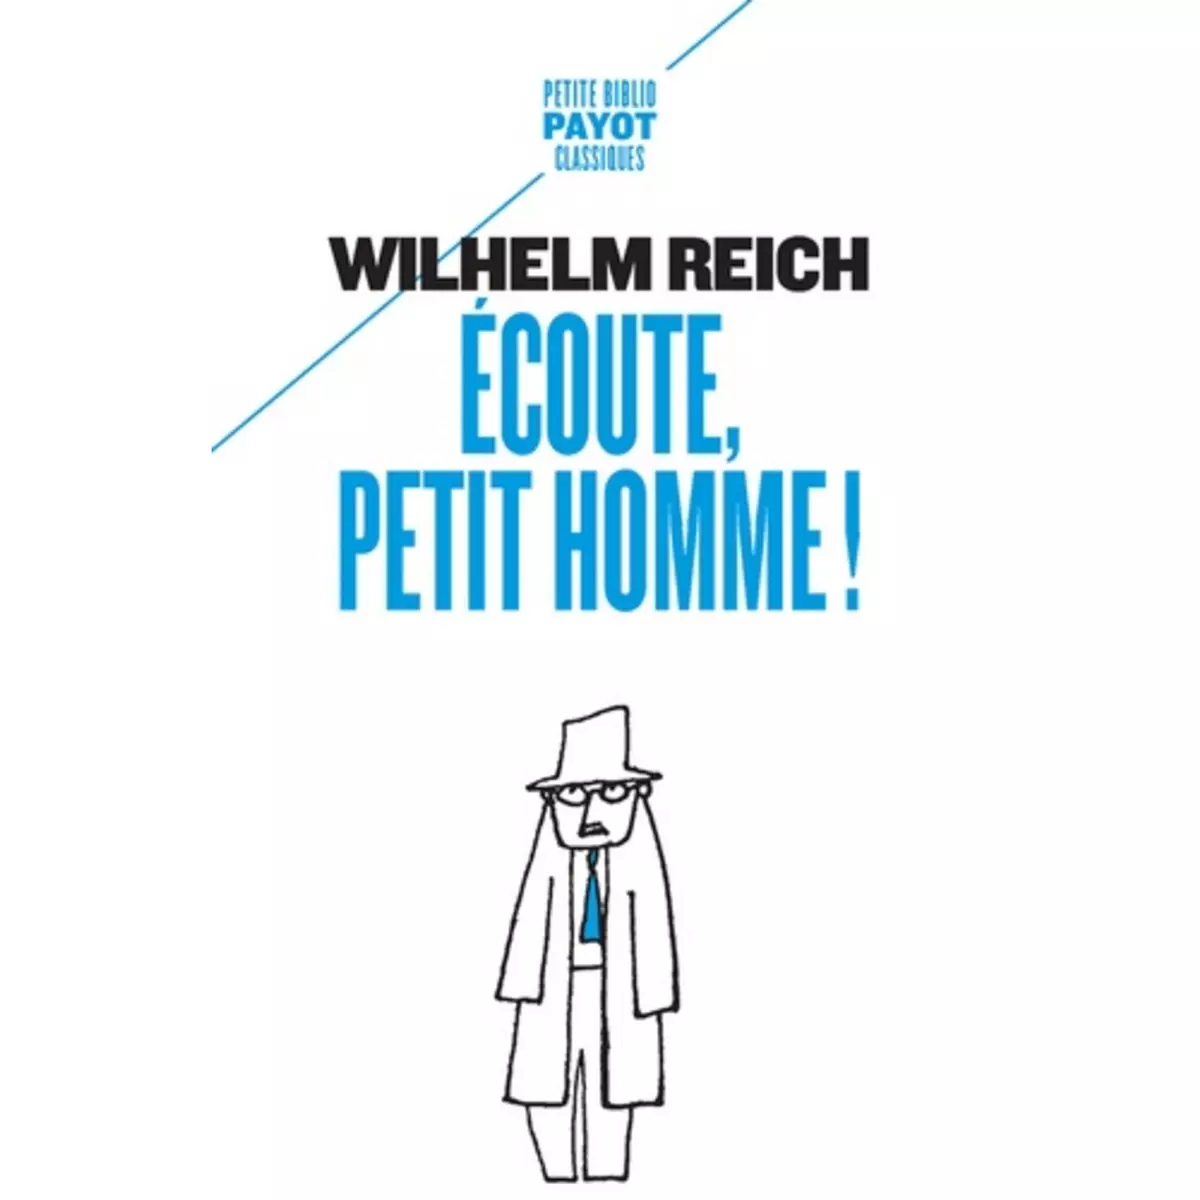  ECOUTE, PETIT HOMME !, Reich Wilhelm